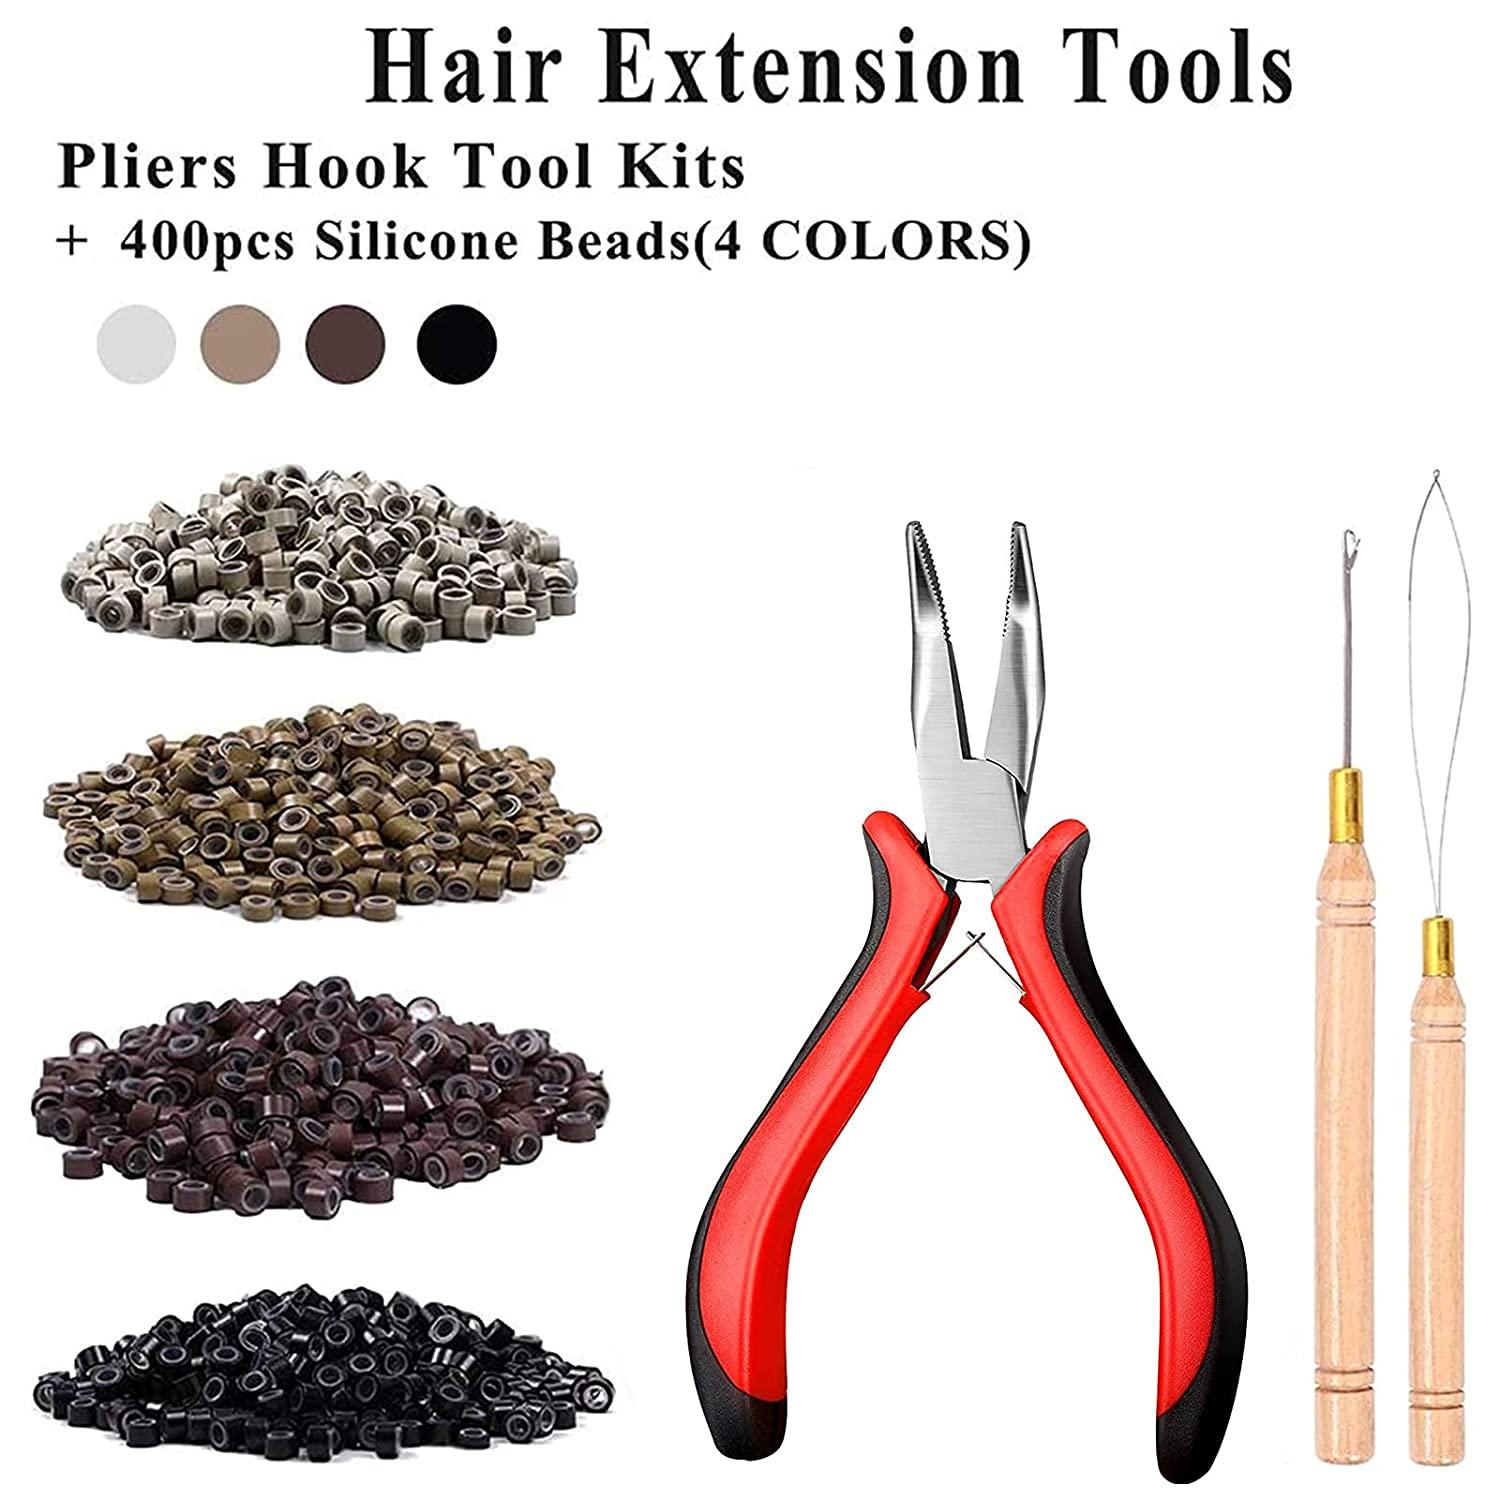 Hair Extension Kit Pliers Pulling Hook Loop Needle Threader Hair Extensions  Tools with 4 Color Micro Ring Beads (Black, Brown, Dark Blonde, Blonde) 100  Black, 100 Brown, 100 Dark Blonde, 100 Blonde